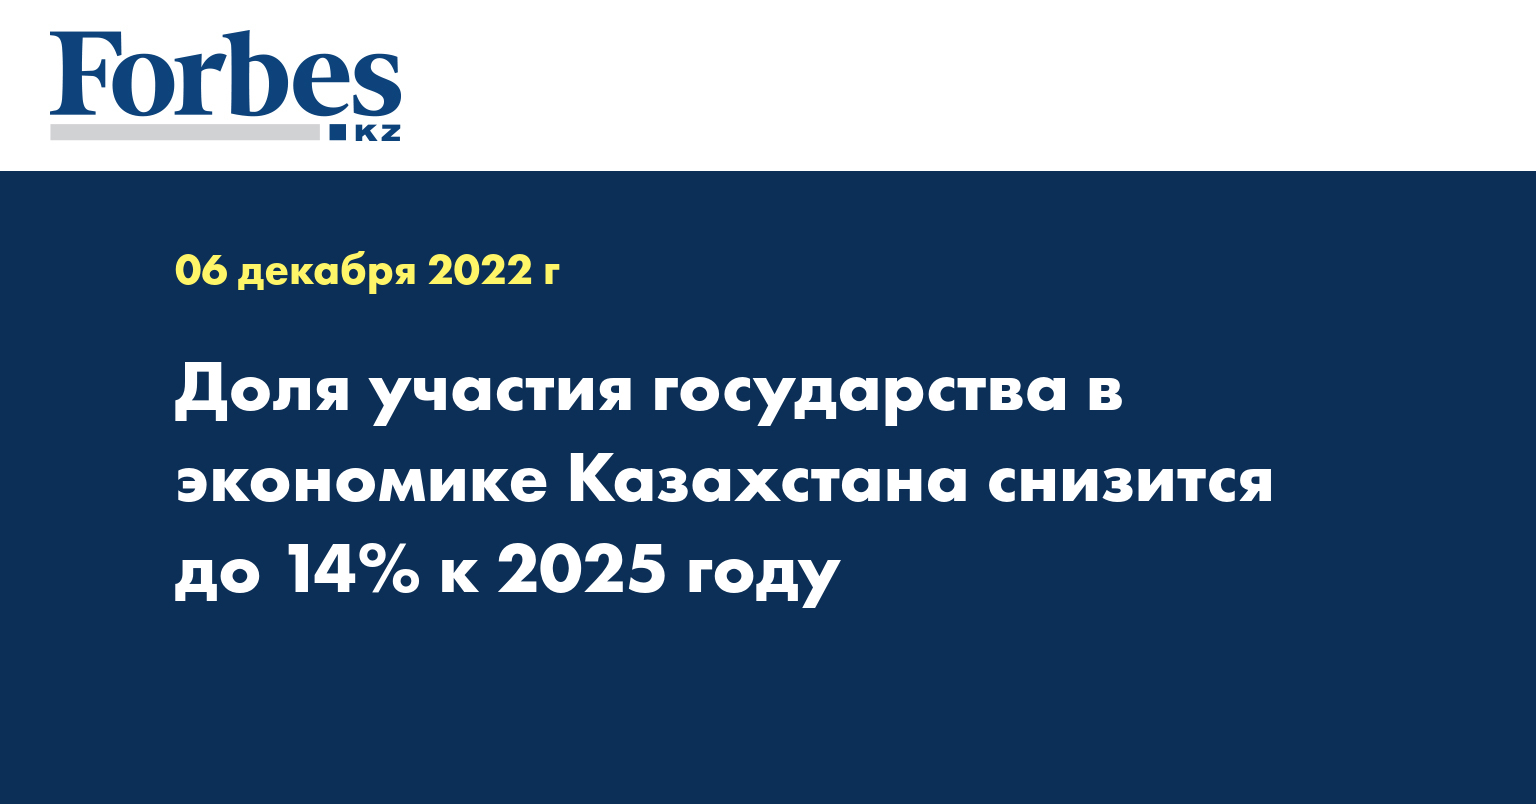 Доля участия государства в экономике Казахстана снизится до 14% к 2025 году